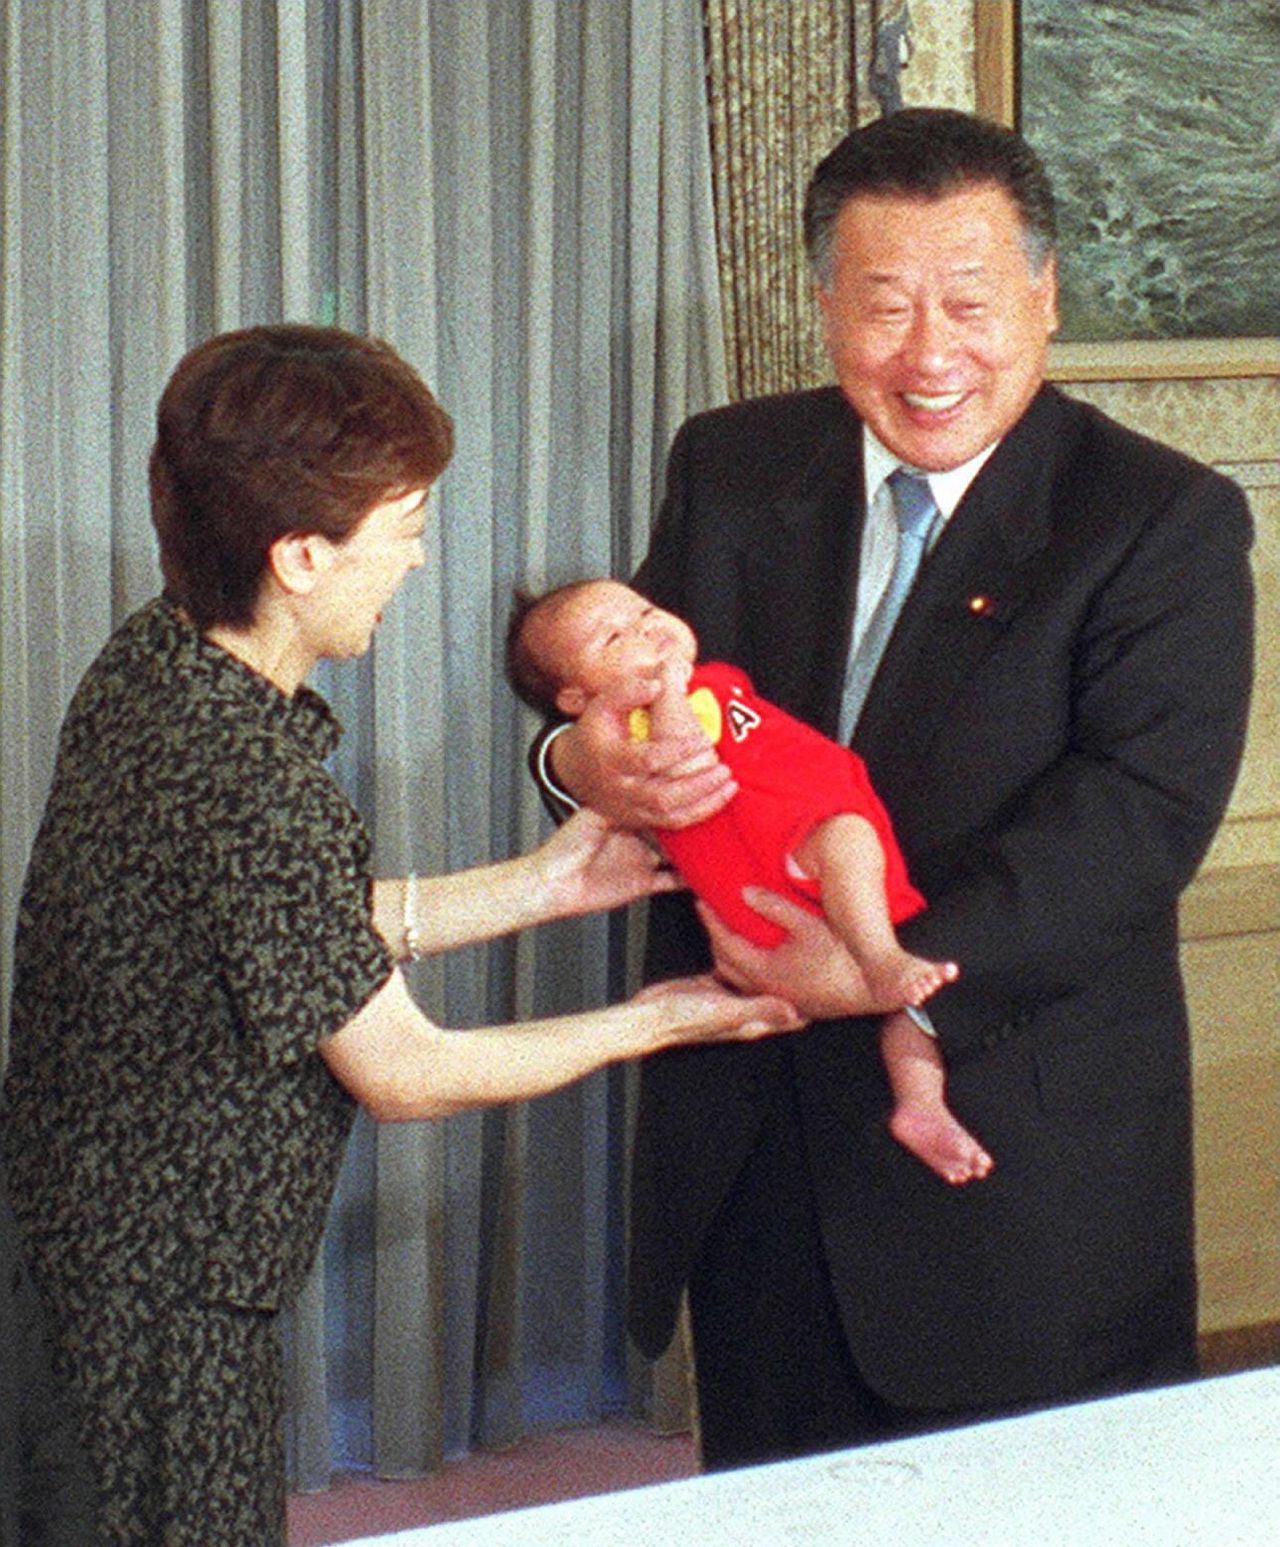 رئيس الوزراء الأسبق موري يوشيرو يحمل ابنة هاشيموتو (سيكا) البالغة من العمر شهر واحد في يونيو/ حزيران عام 2000. وقد اختارت هاشيموتو، التي هي نفسها سُميت تكريماً لأولمبياد طوكيو عام 1964، اسم ابنتها والذي يعني ”الشعلة الأولمبية“ تكريماً لدورة ألعاب سيدني التي أقيمت في ذلك العام. (مكتب مجلس الوزراء/ جيجي برس)